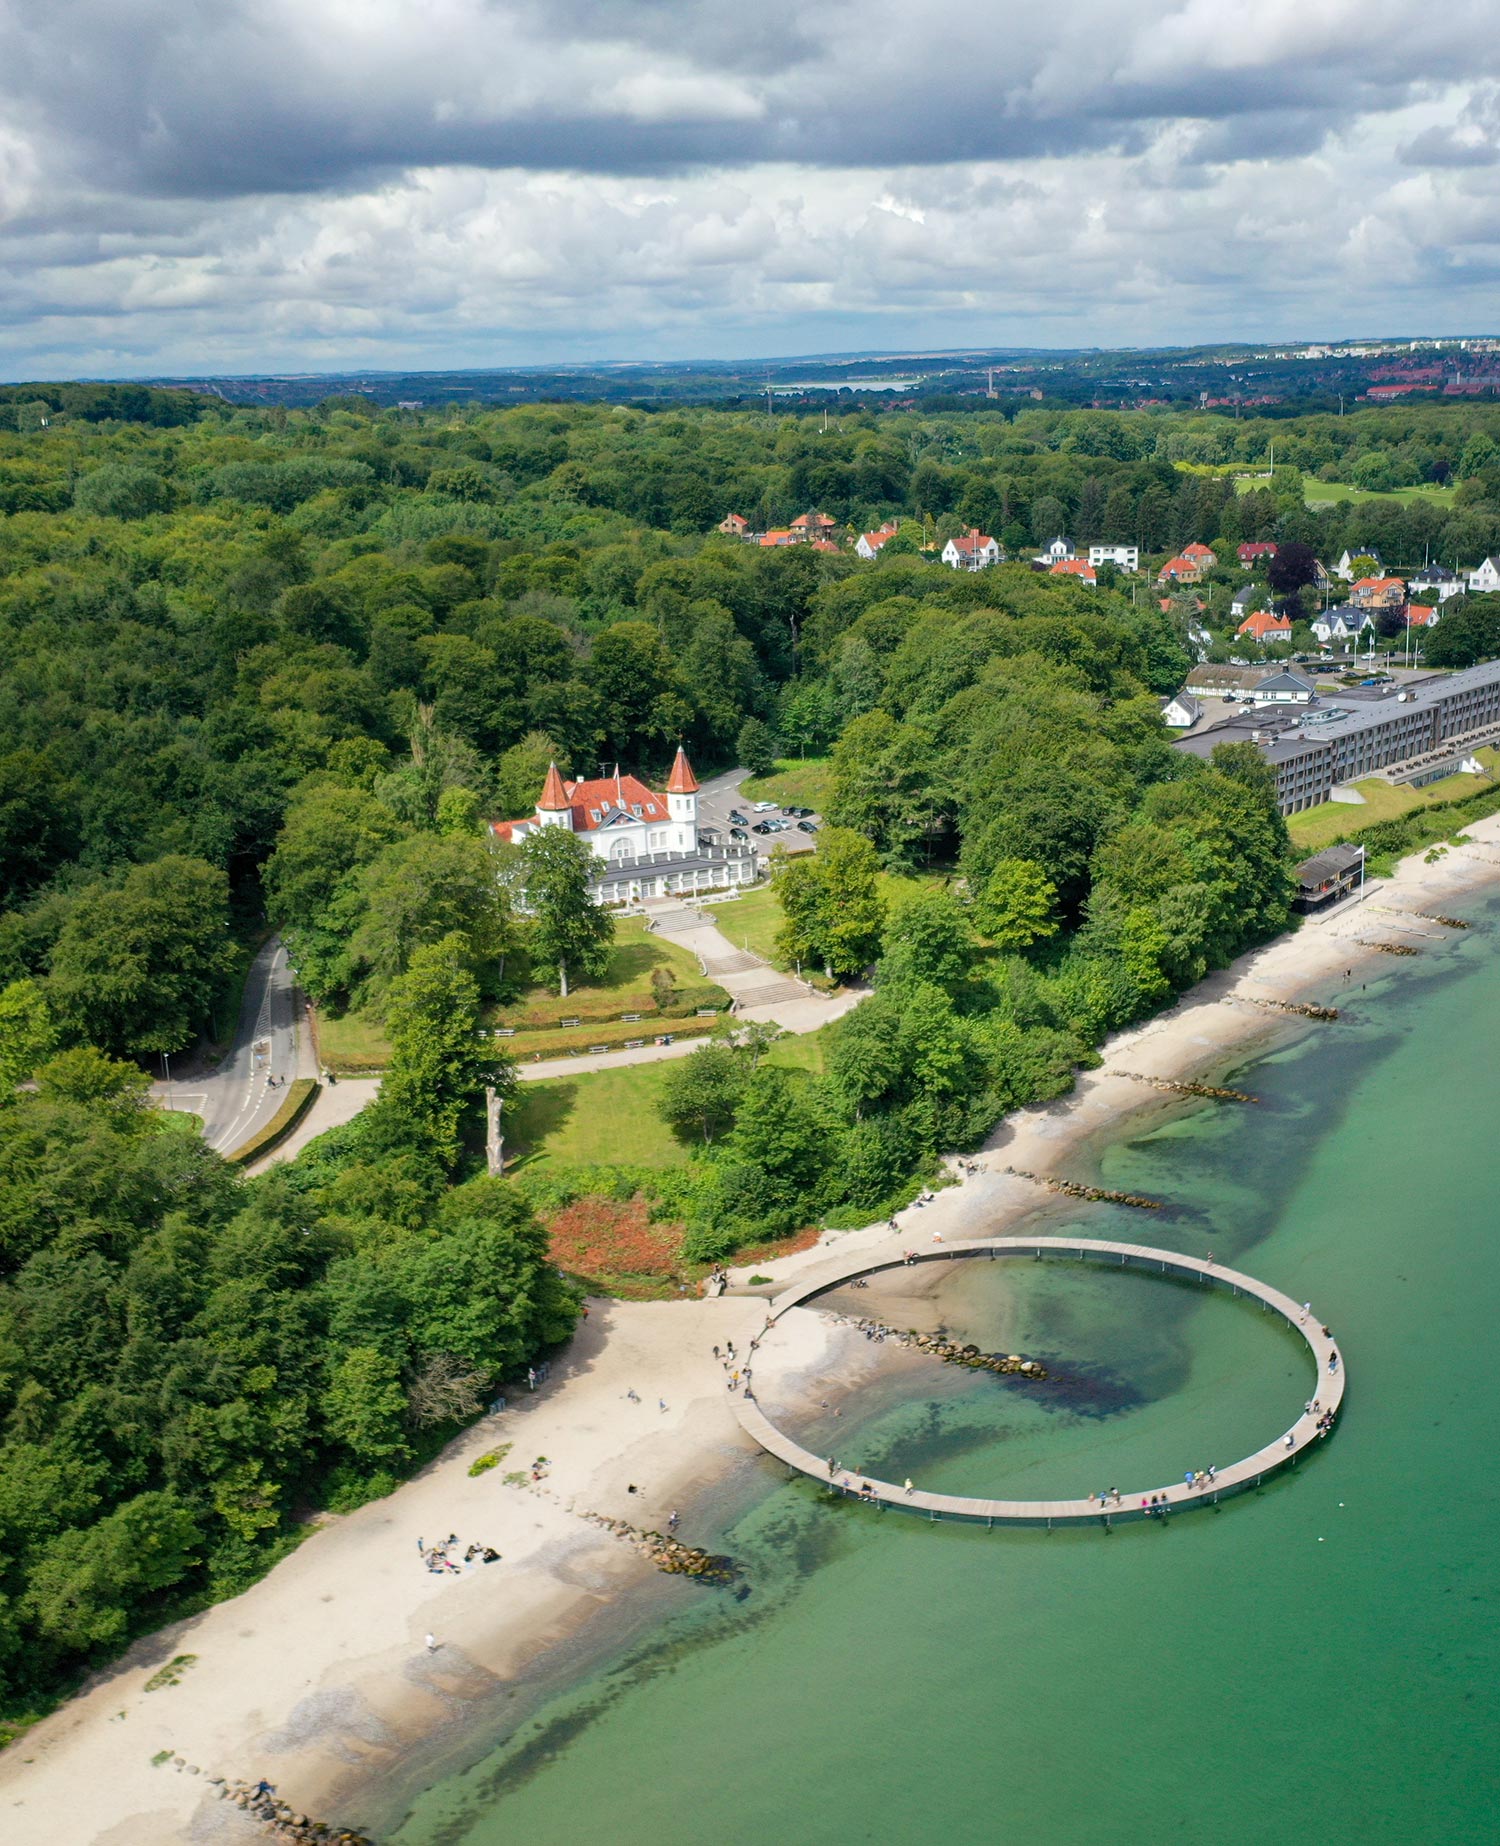 Beau château avec une promenade circulaire sur l'eau pour les touristes au Danemark